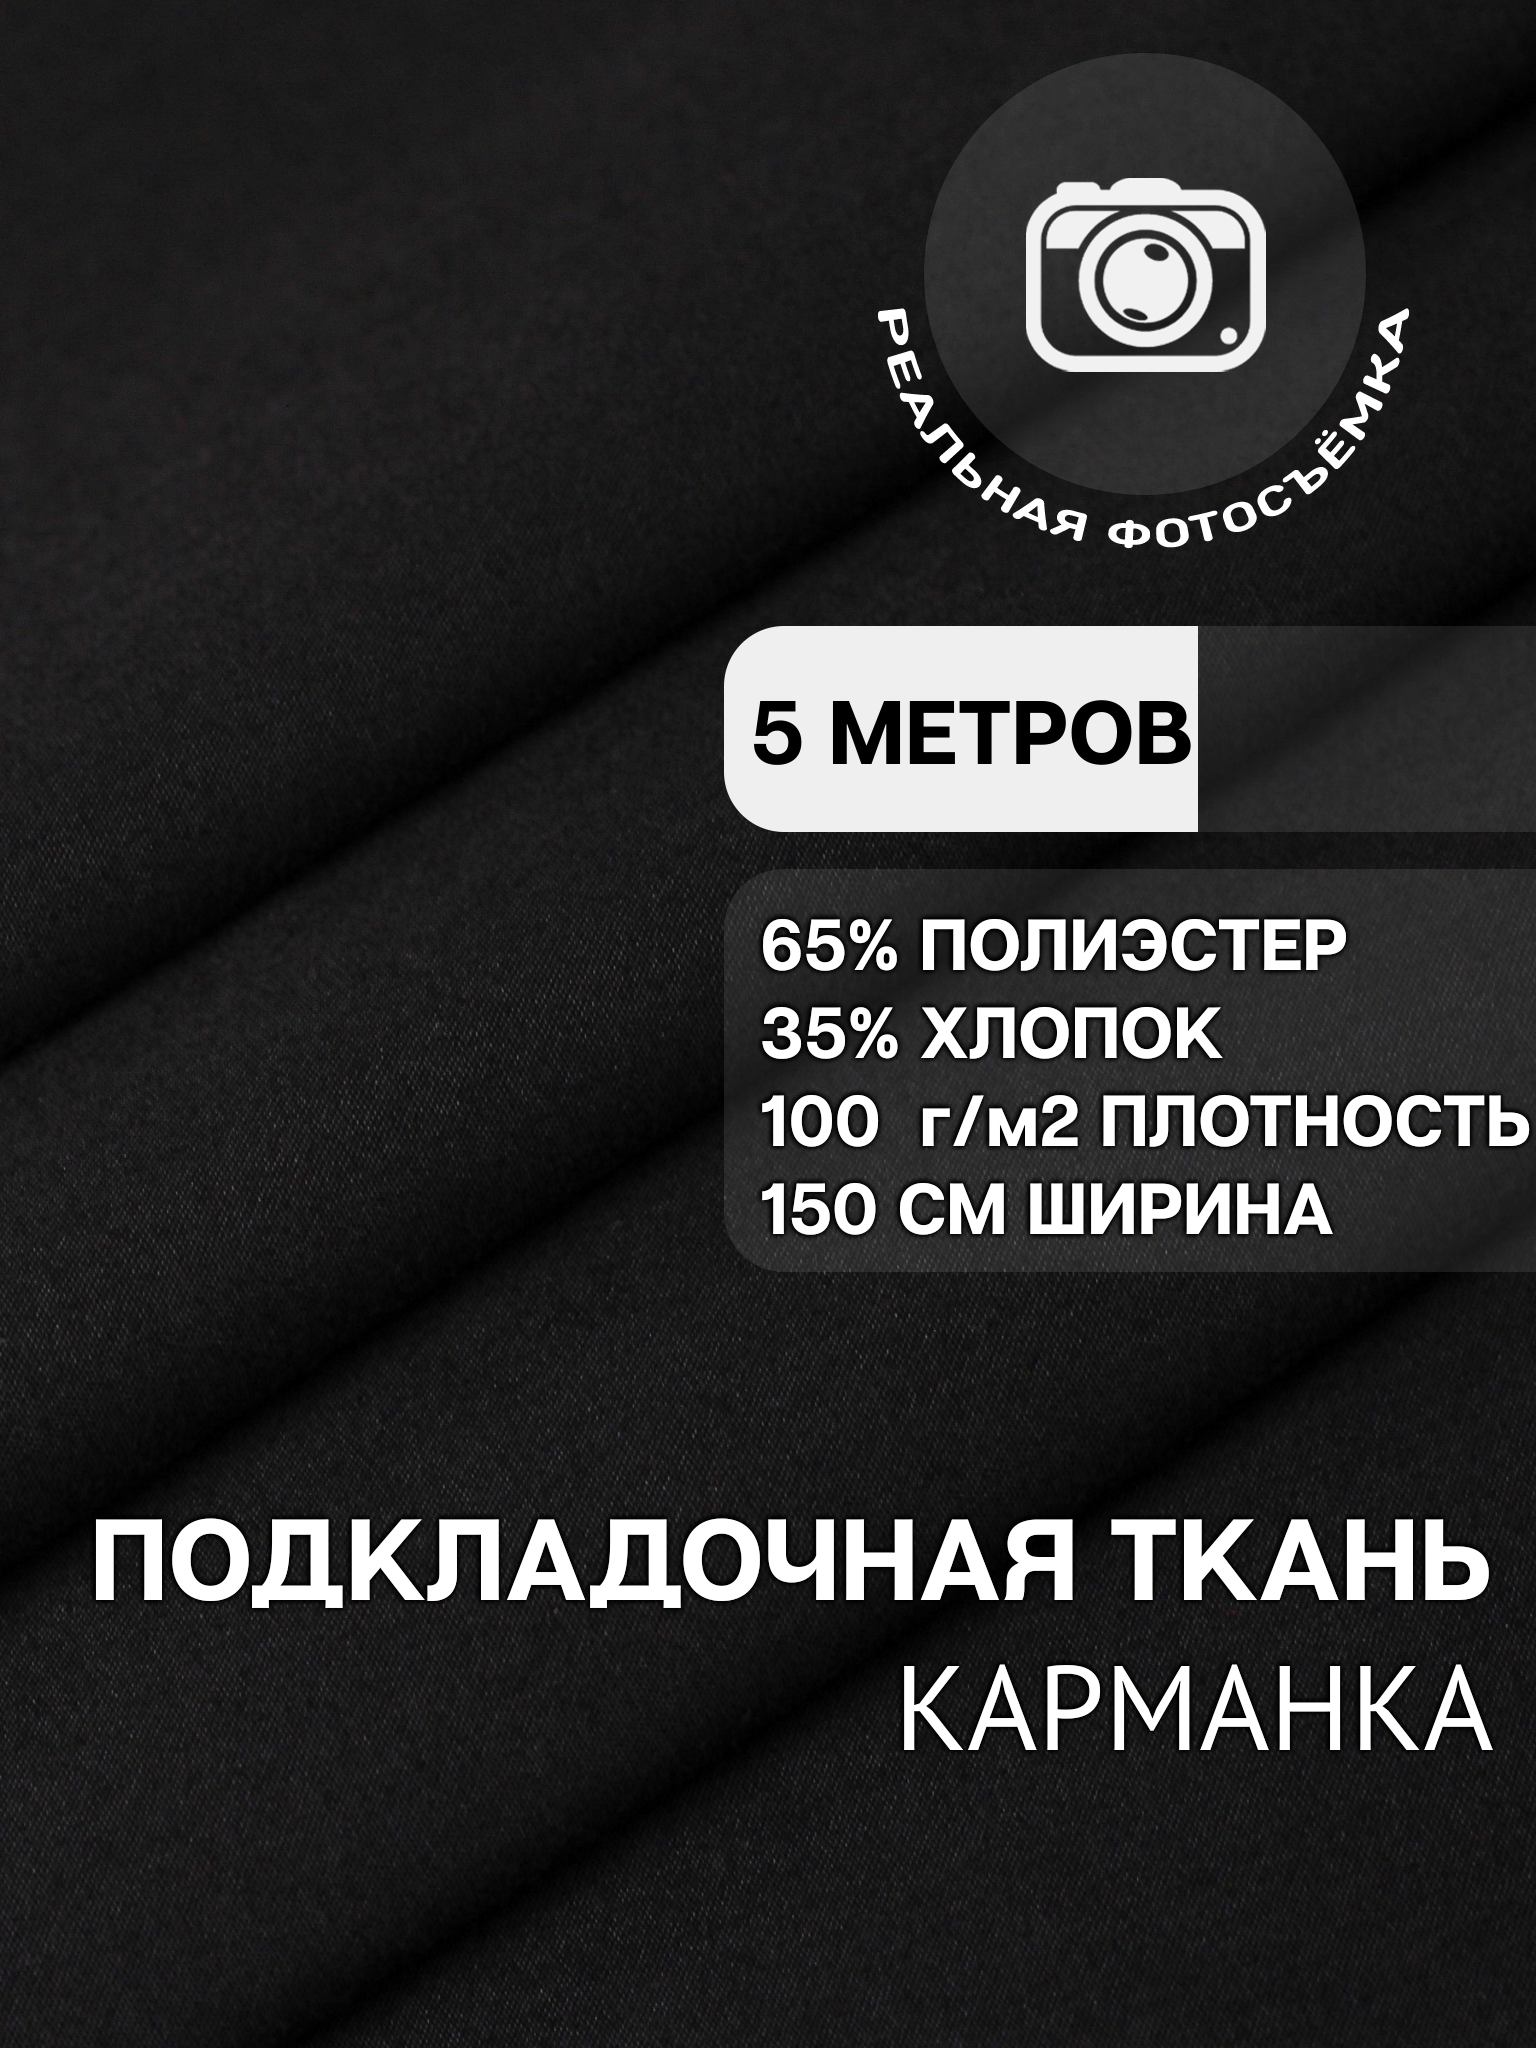 Ткань карманная подкладочная черная для шитья, однотонная MDC FABRICS KX100/4 для одежды. Хлопок 35%. Отрез 5 метров